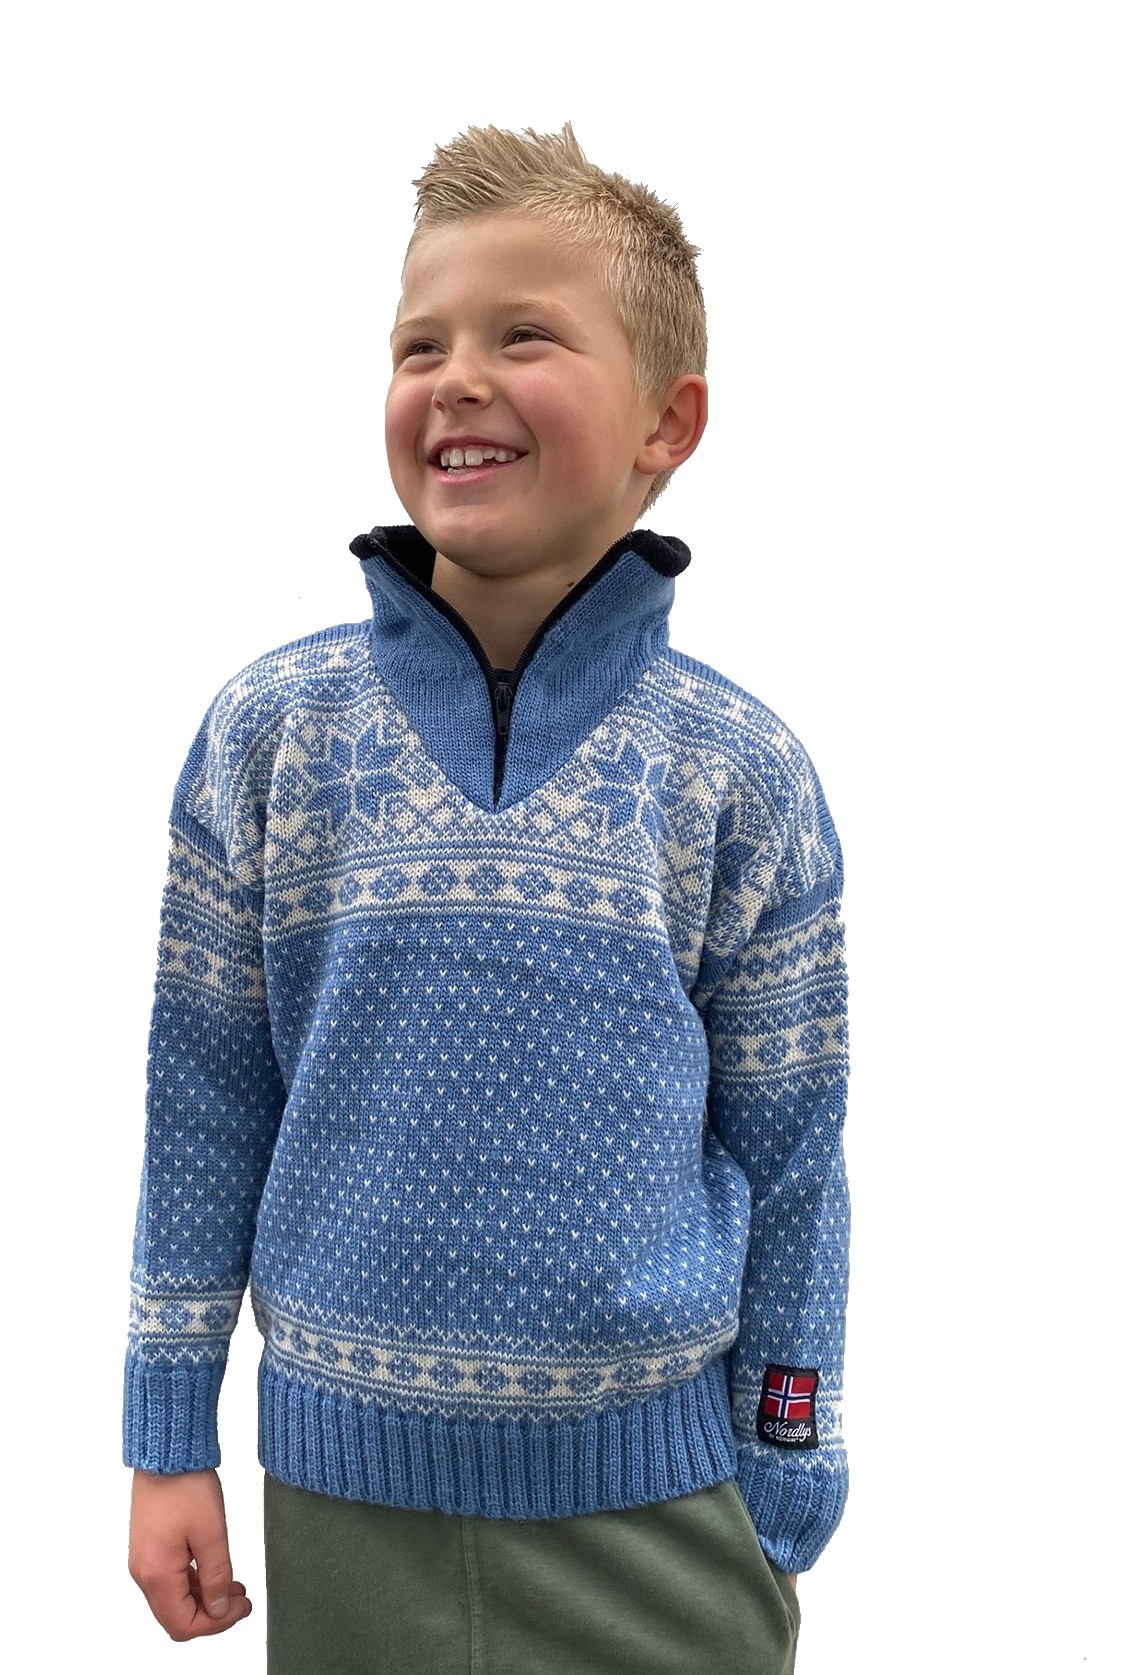 Nordlys "Mønstret" strikket genser barn, blå og hvit, 2 til 12 år.